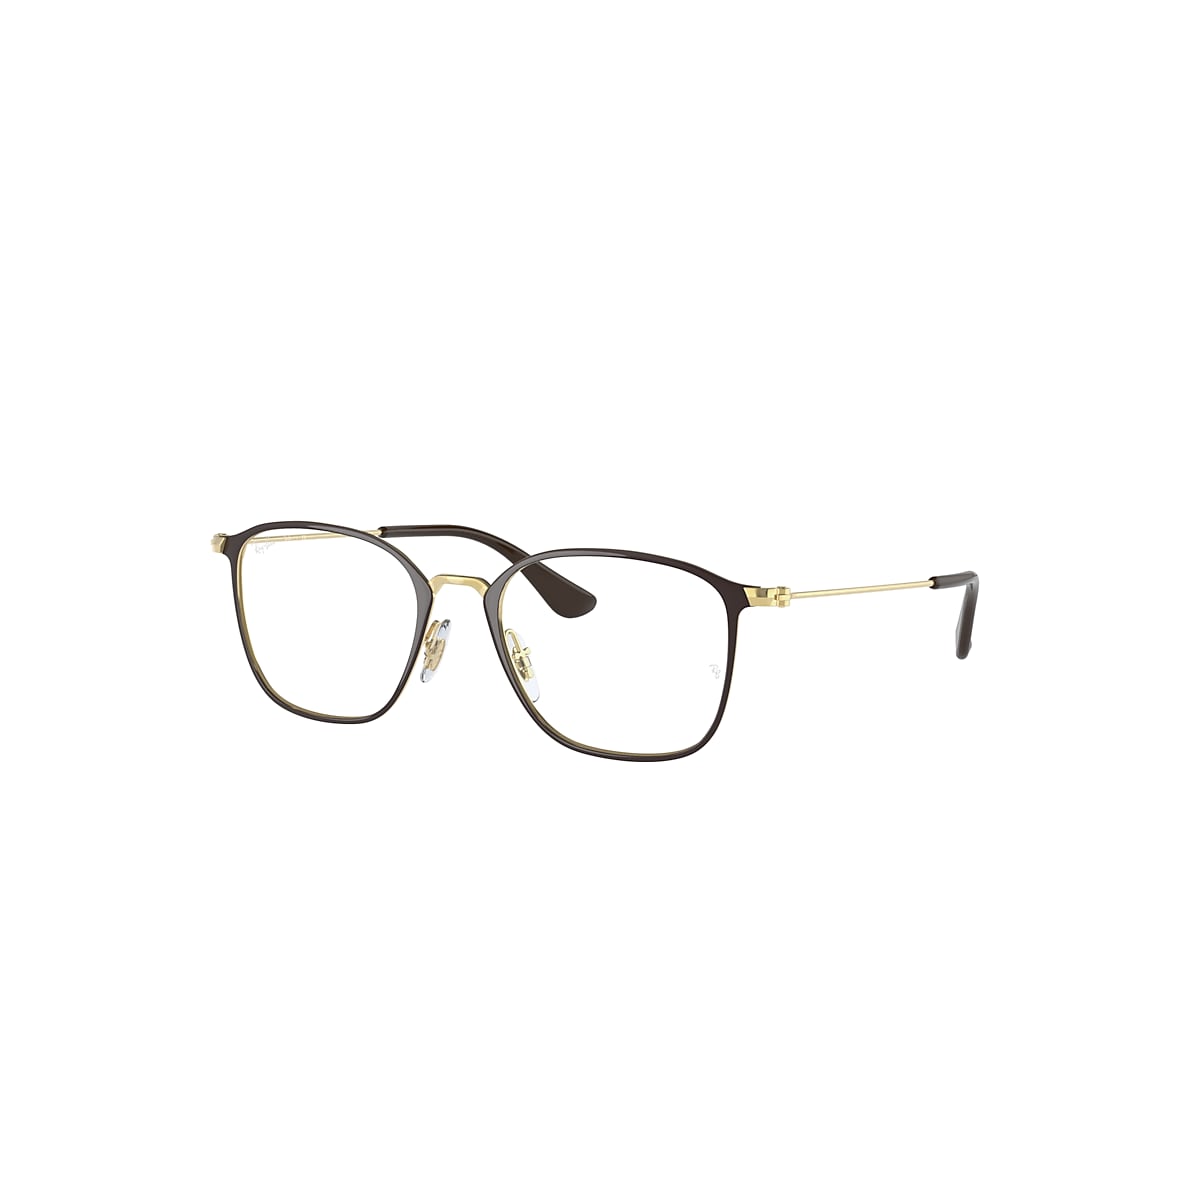 RB1056 OPTICS KIDS Eyeglasses with Brown Frame - Ray-Ban